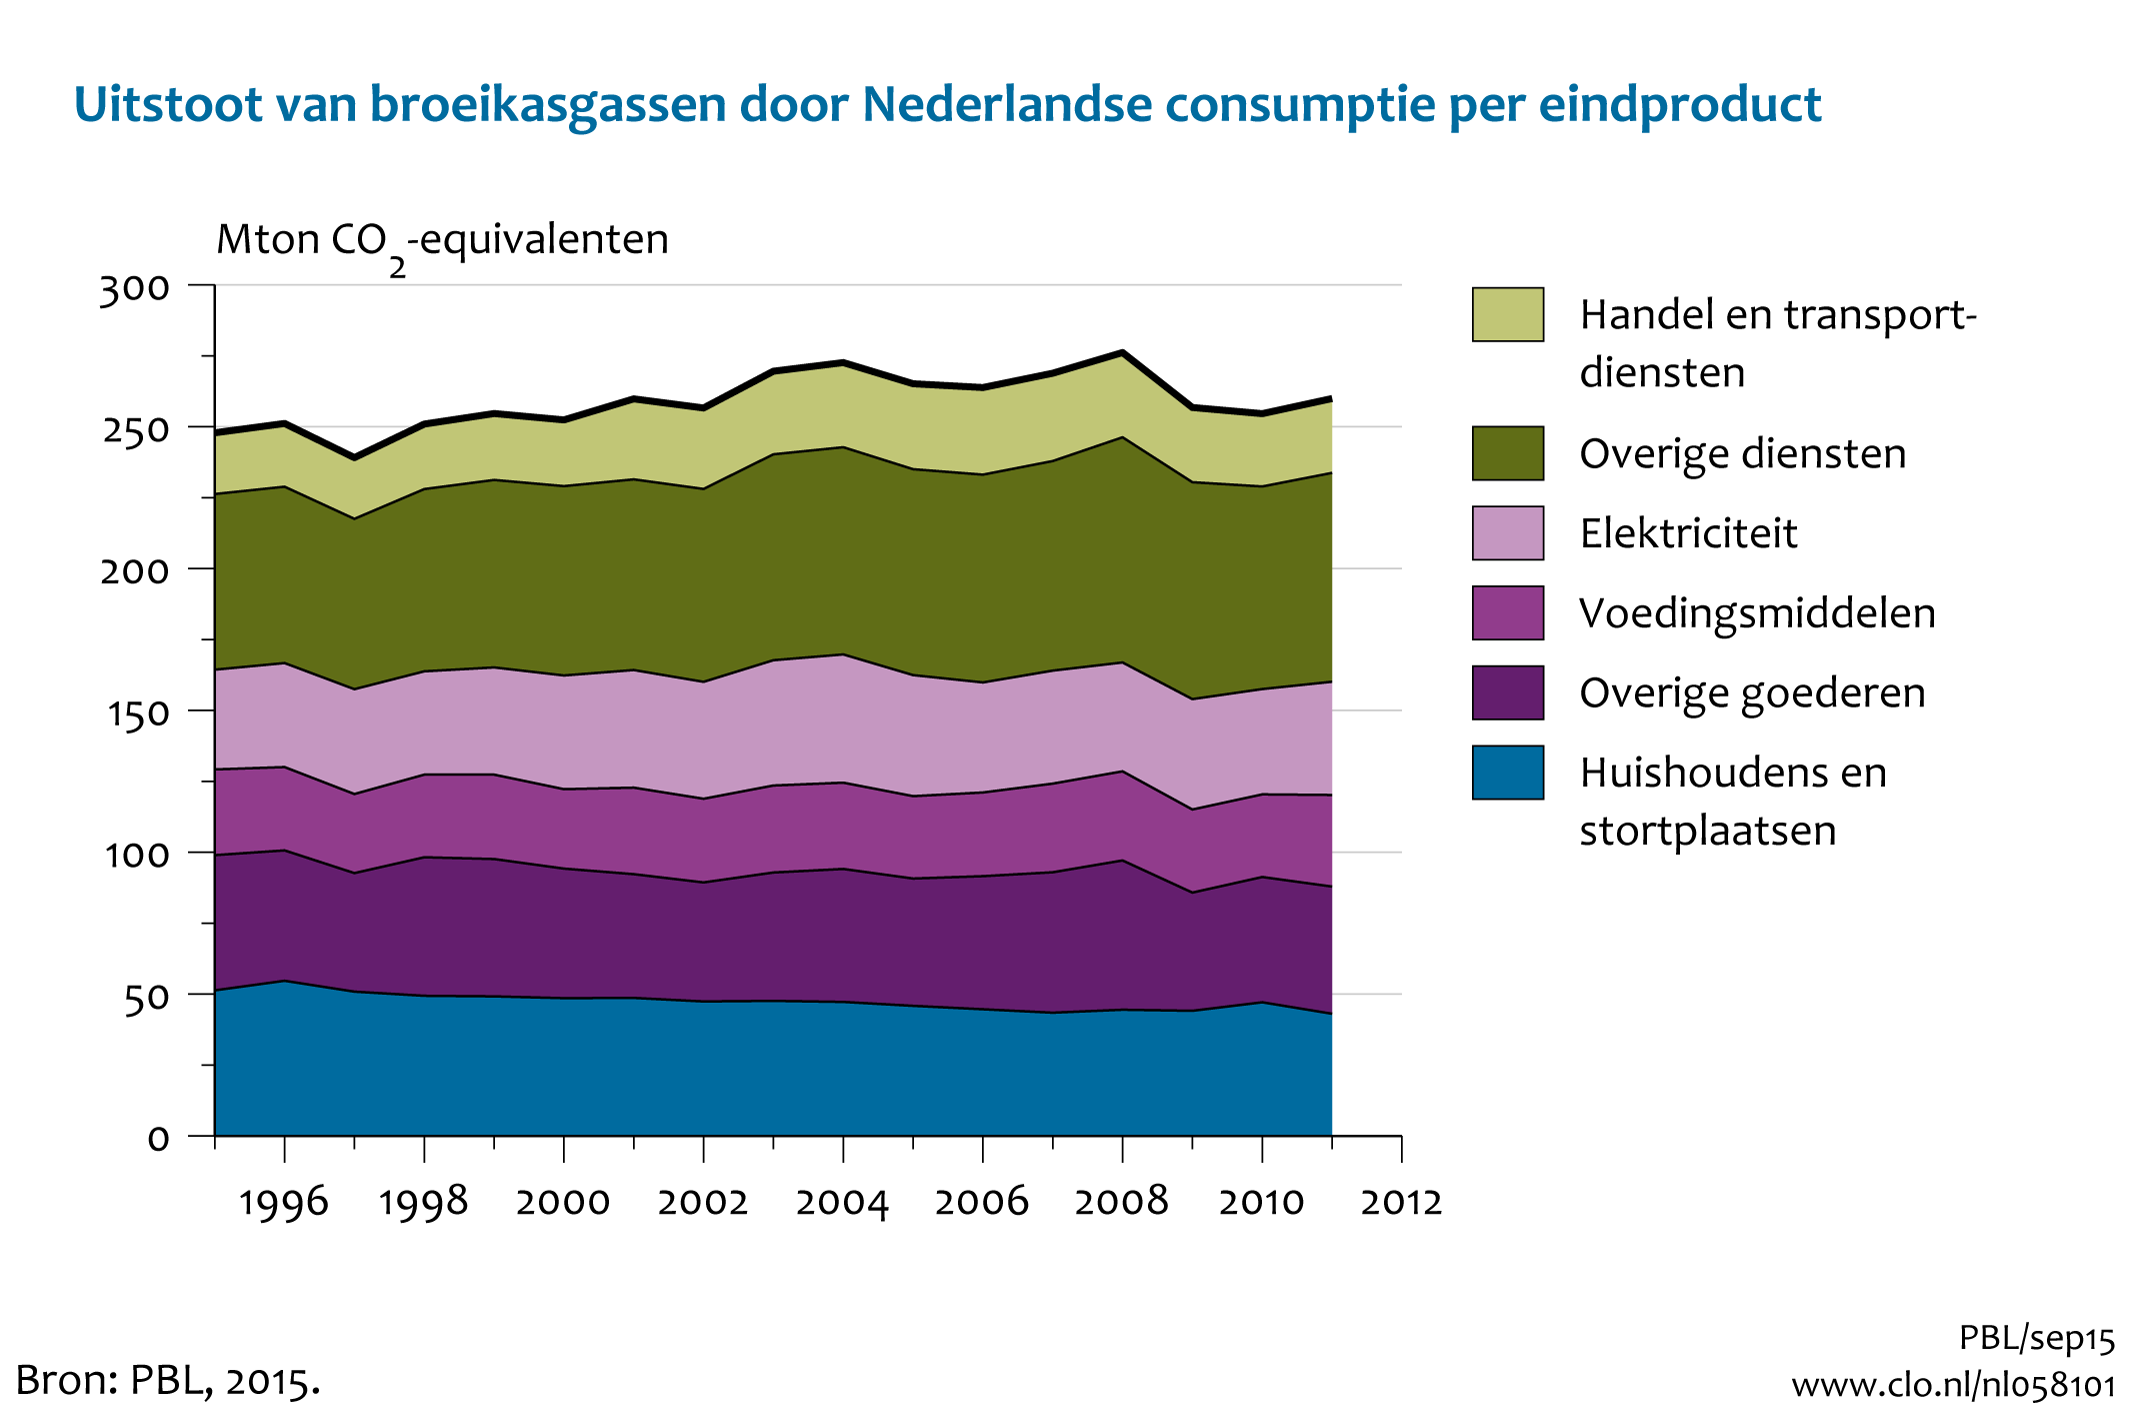 Figuur Uitstoot van broeikasgassen door Nederlandse consumptie . In de rest van de tekst wordt deze figuur uitgebreider uitgelegd.